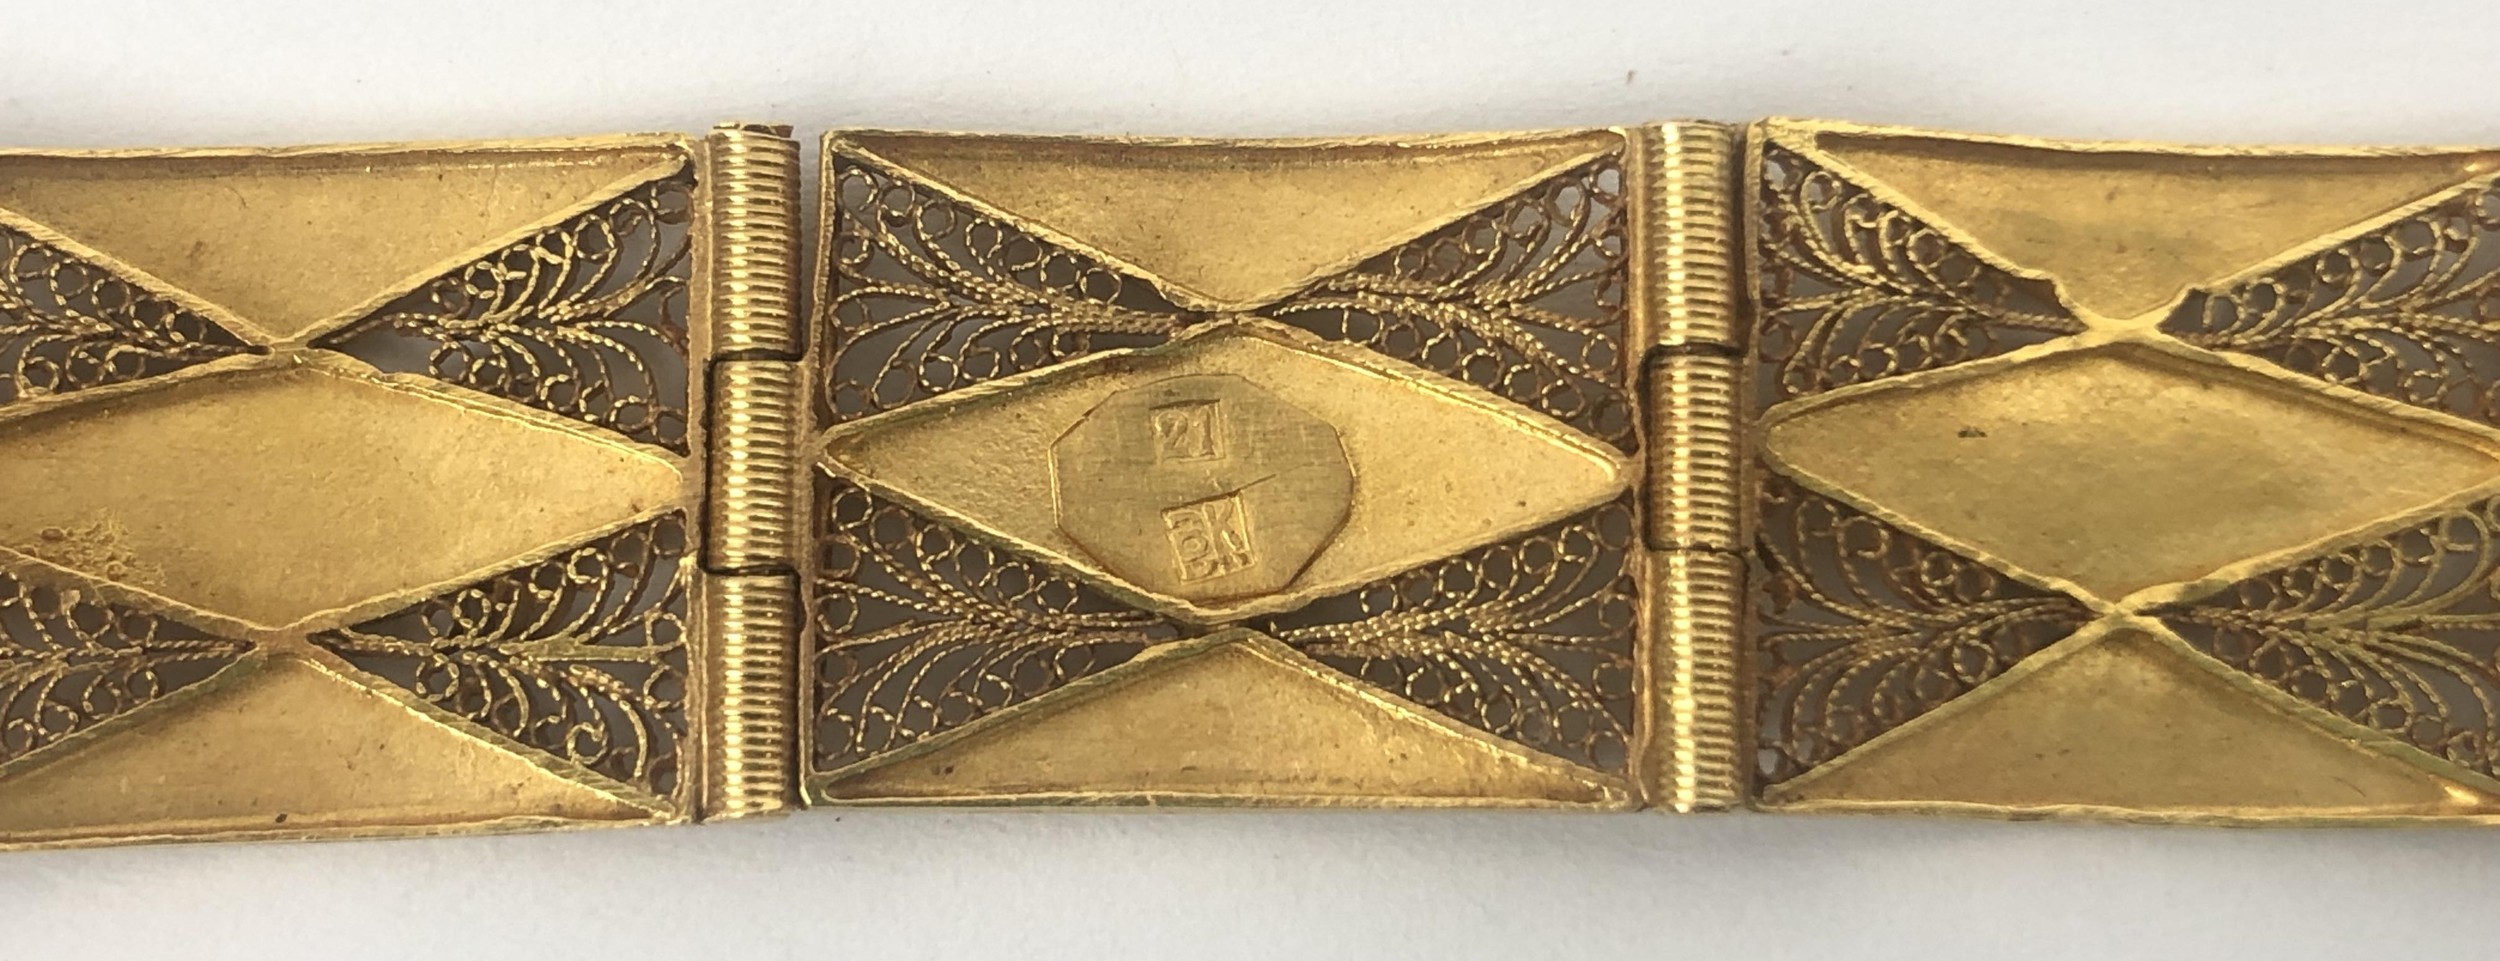 A 21ct gold bracelet, 17.8 g - Image 4 of 5